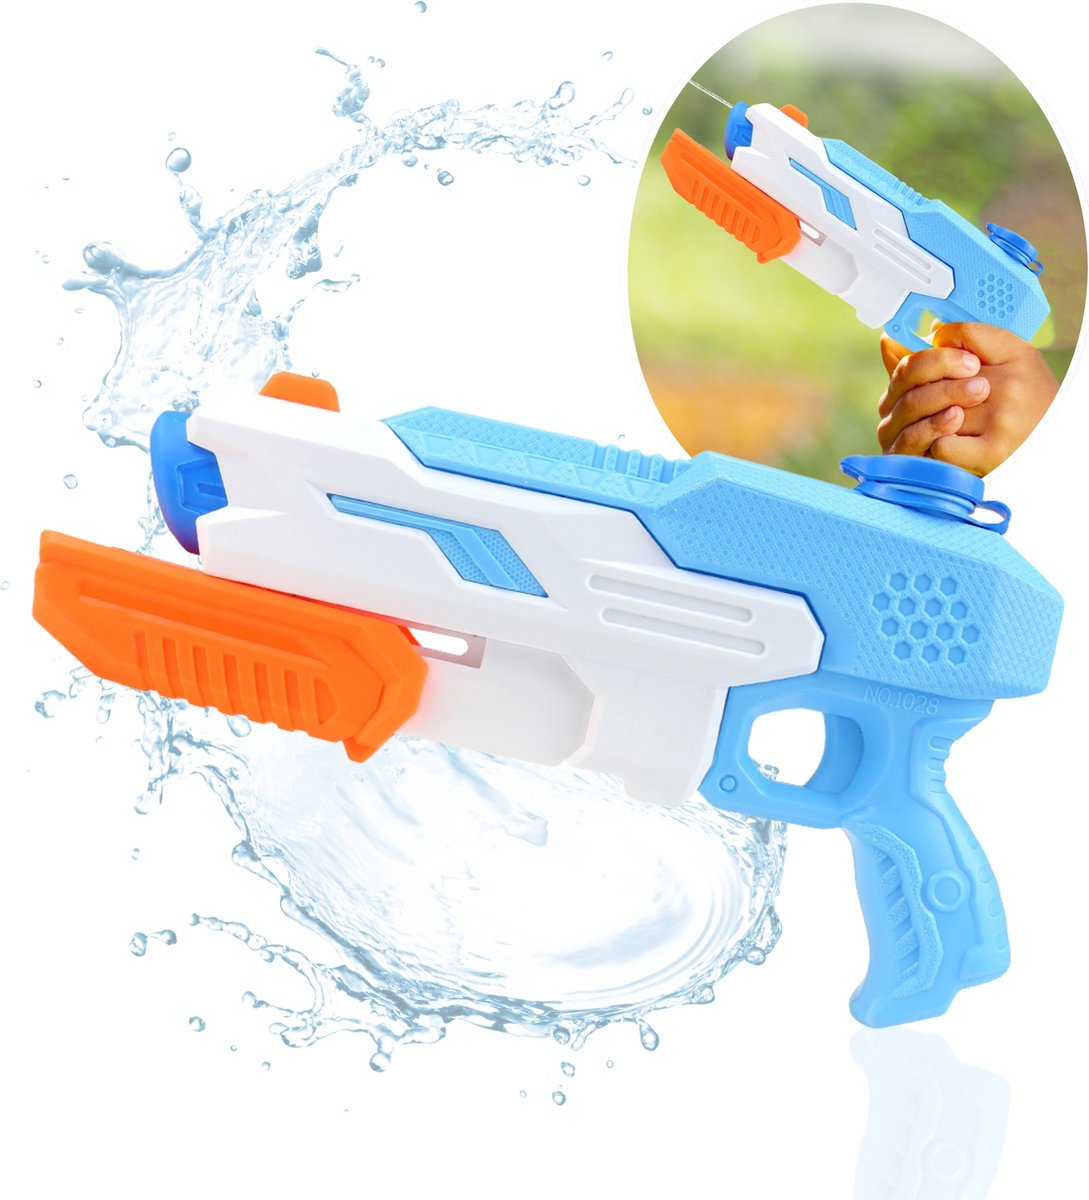 CaptainXL Waterpistool - Super Soaker - Waterspeelgoed - Zwembad Speelgoed - Speelgoed voor Kinderen - 530ML - Tot 9 Meter Ver - Binnen 10 Seconden Gevuld - Veilig voor Kinderen - Blauw